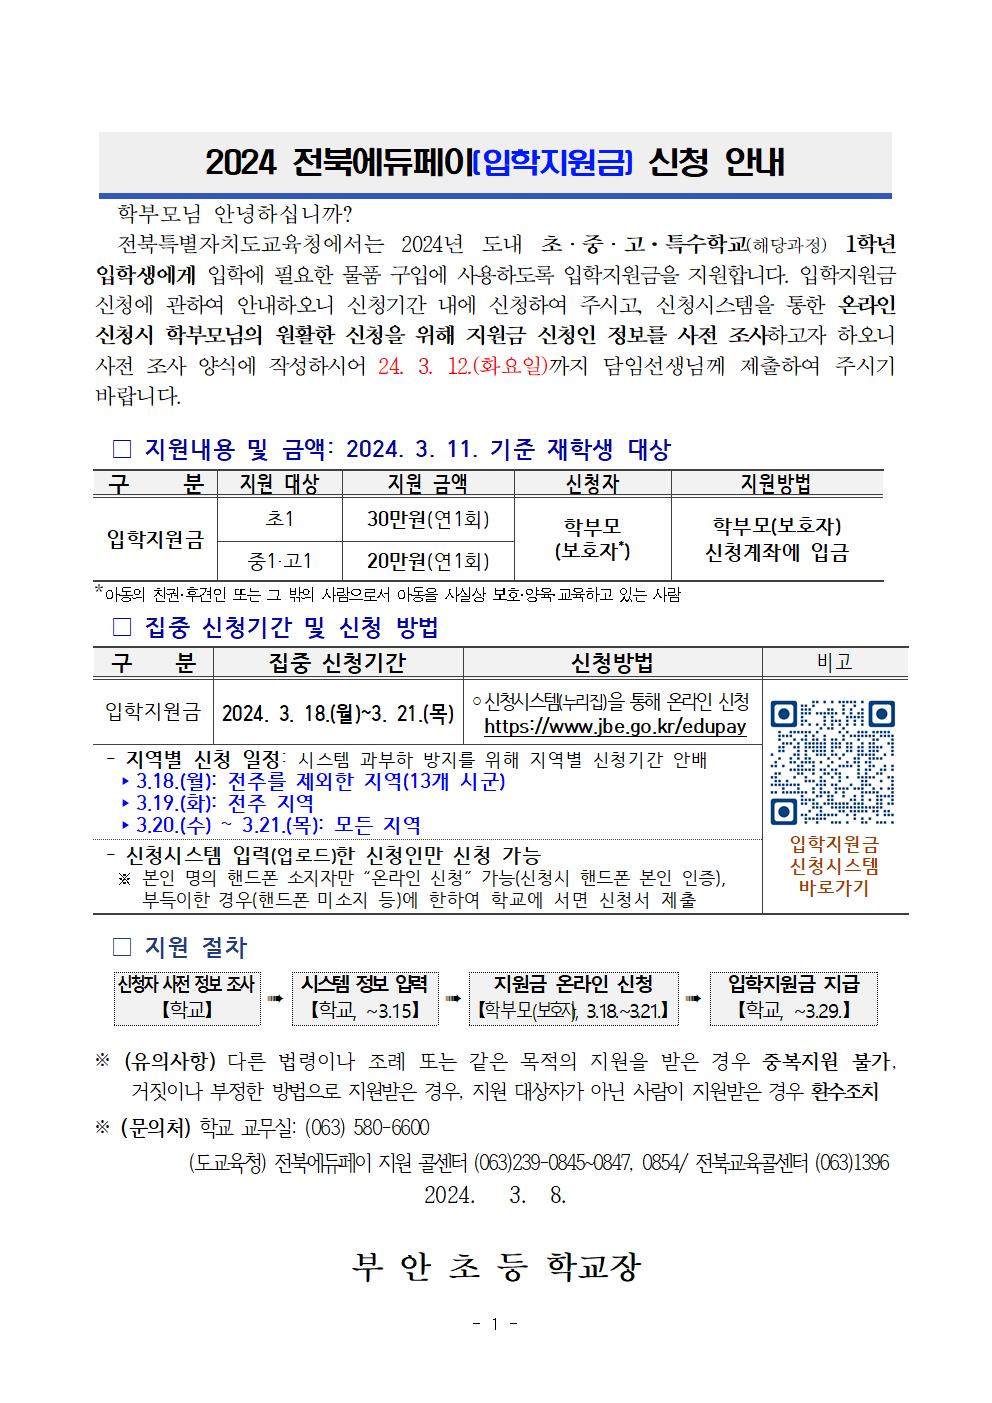 2024 전북에듀페이(입학지원금) 신청 안내 및 신청자 사전 정보조사 안내장001